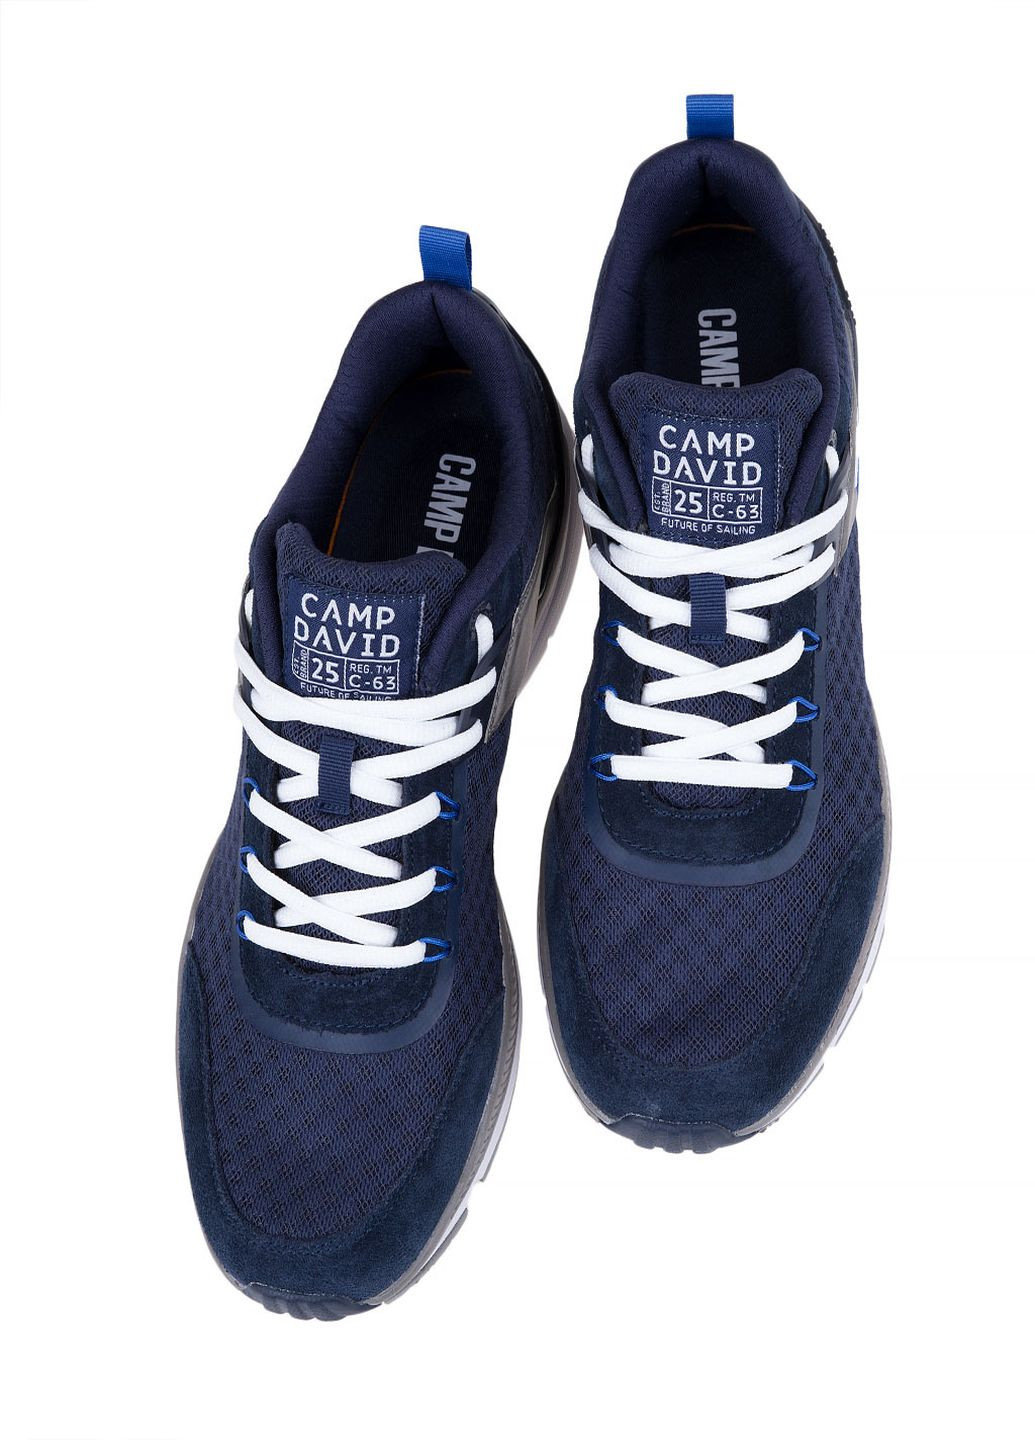 Синие зимние кроссовки Camp David